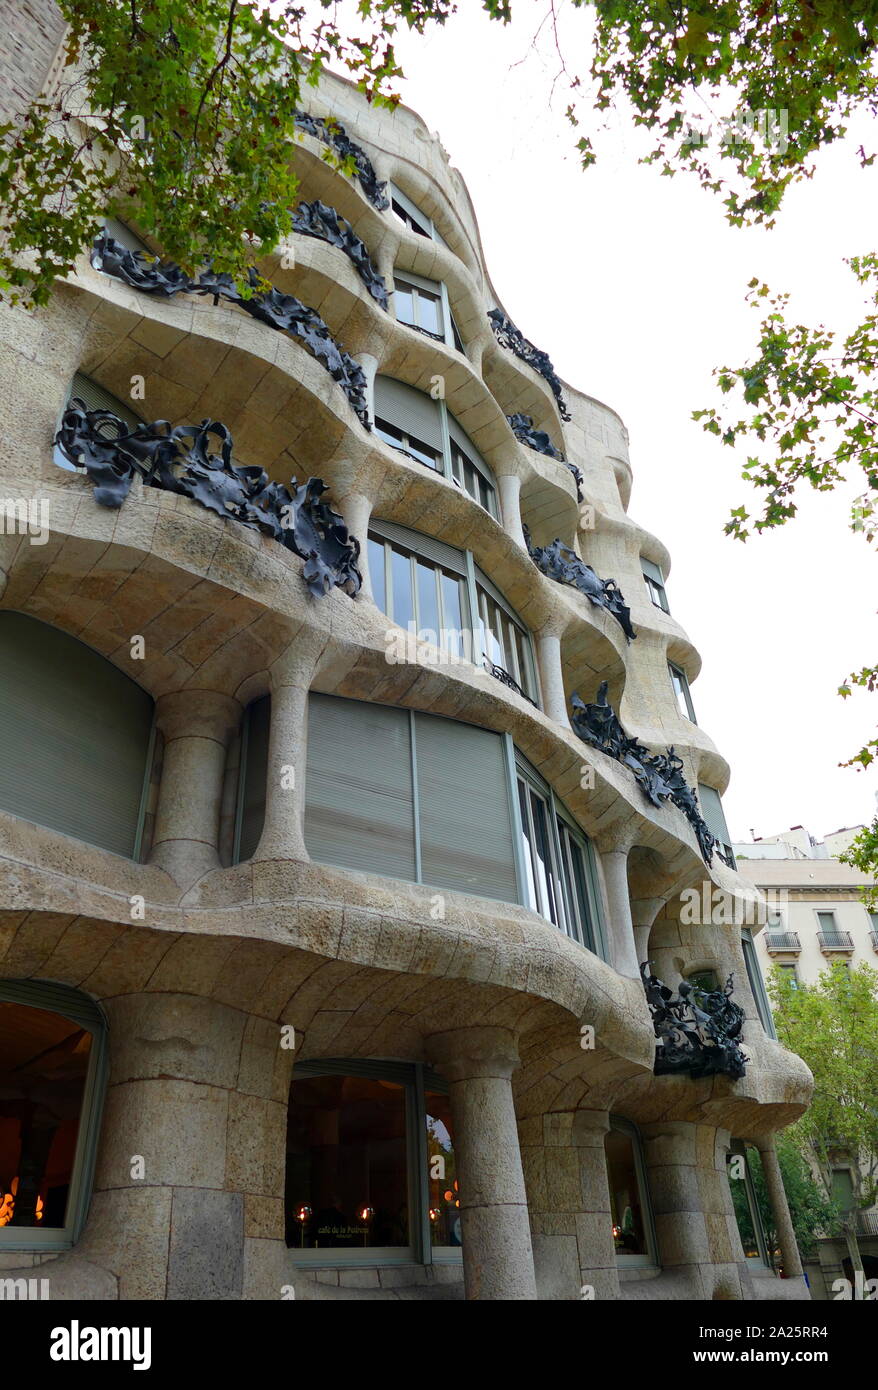 La Casa Milà (La Pedrera), edificio modernista de Barcelona, Cataluña, España. Fue la última residencia privada diseñada por el arquitecto Antoni Gaudí y fue construida entre 1906 y 1912. Foto de stock